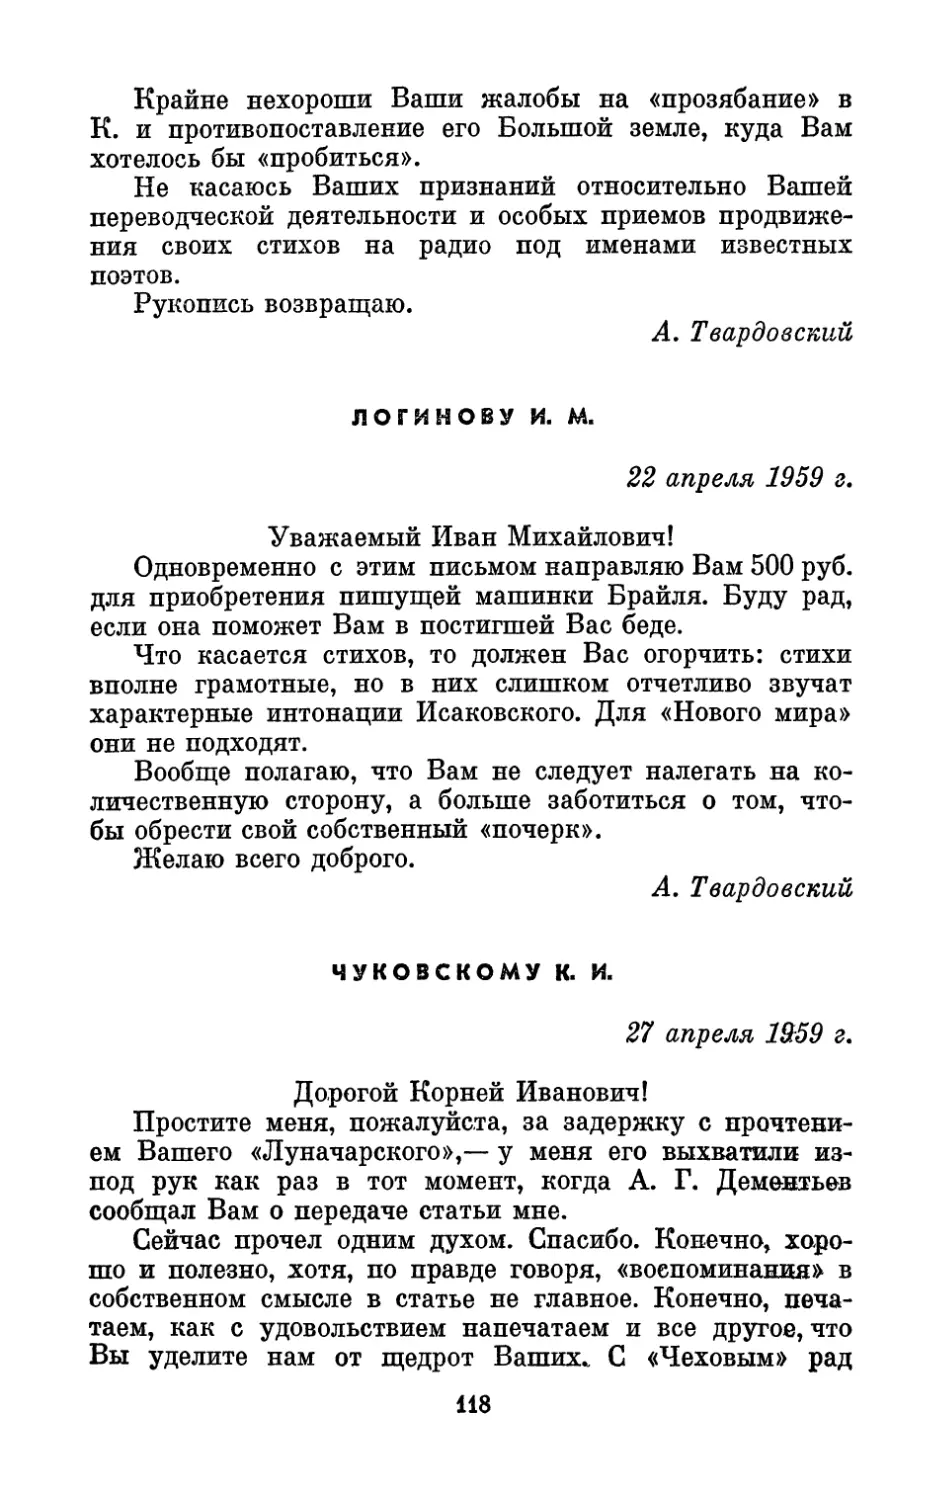 Логинову И. М., 22 апреля 1959 г.
Чуковскому К. И., 27 апреля 1959 г.